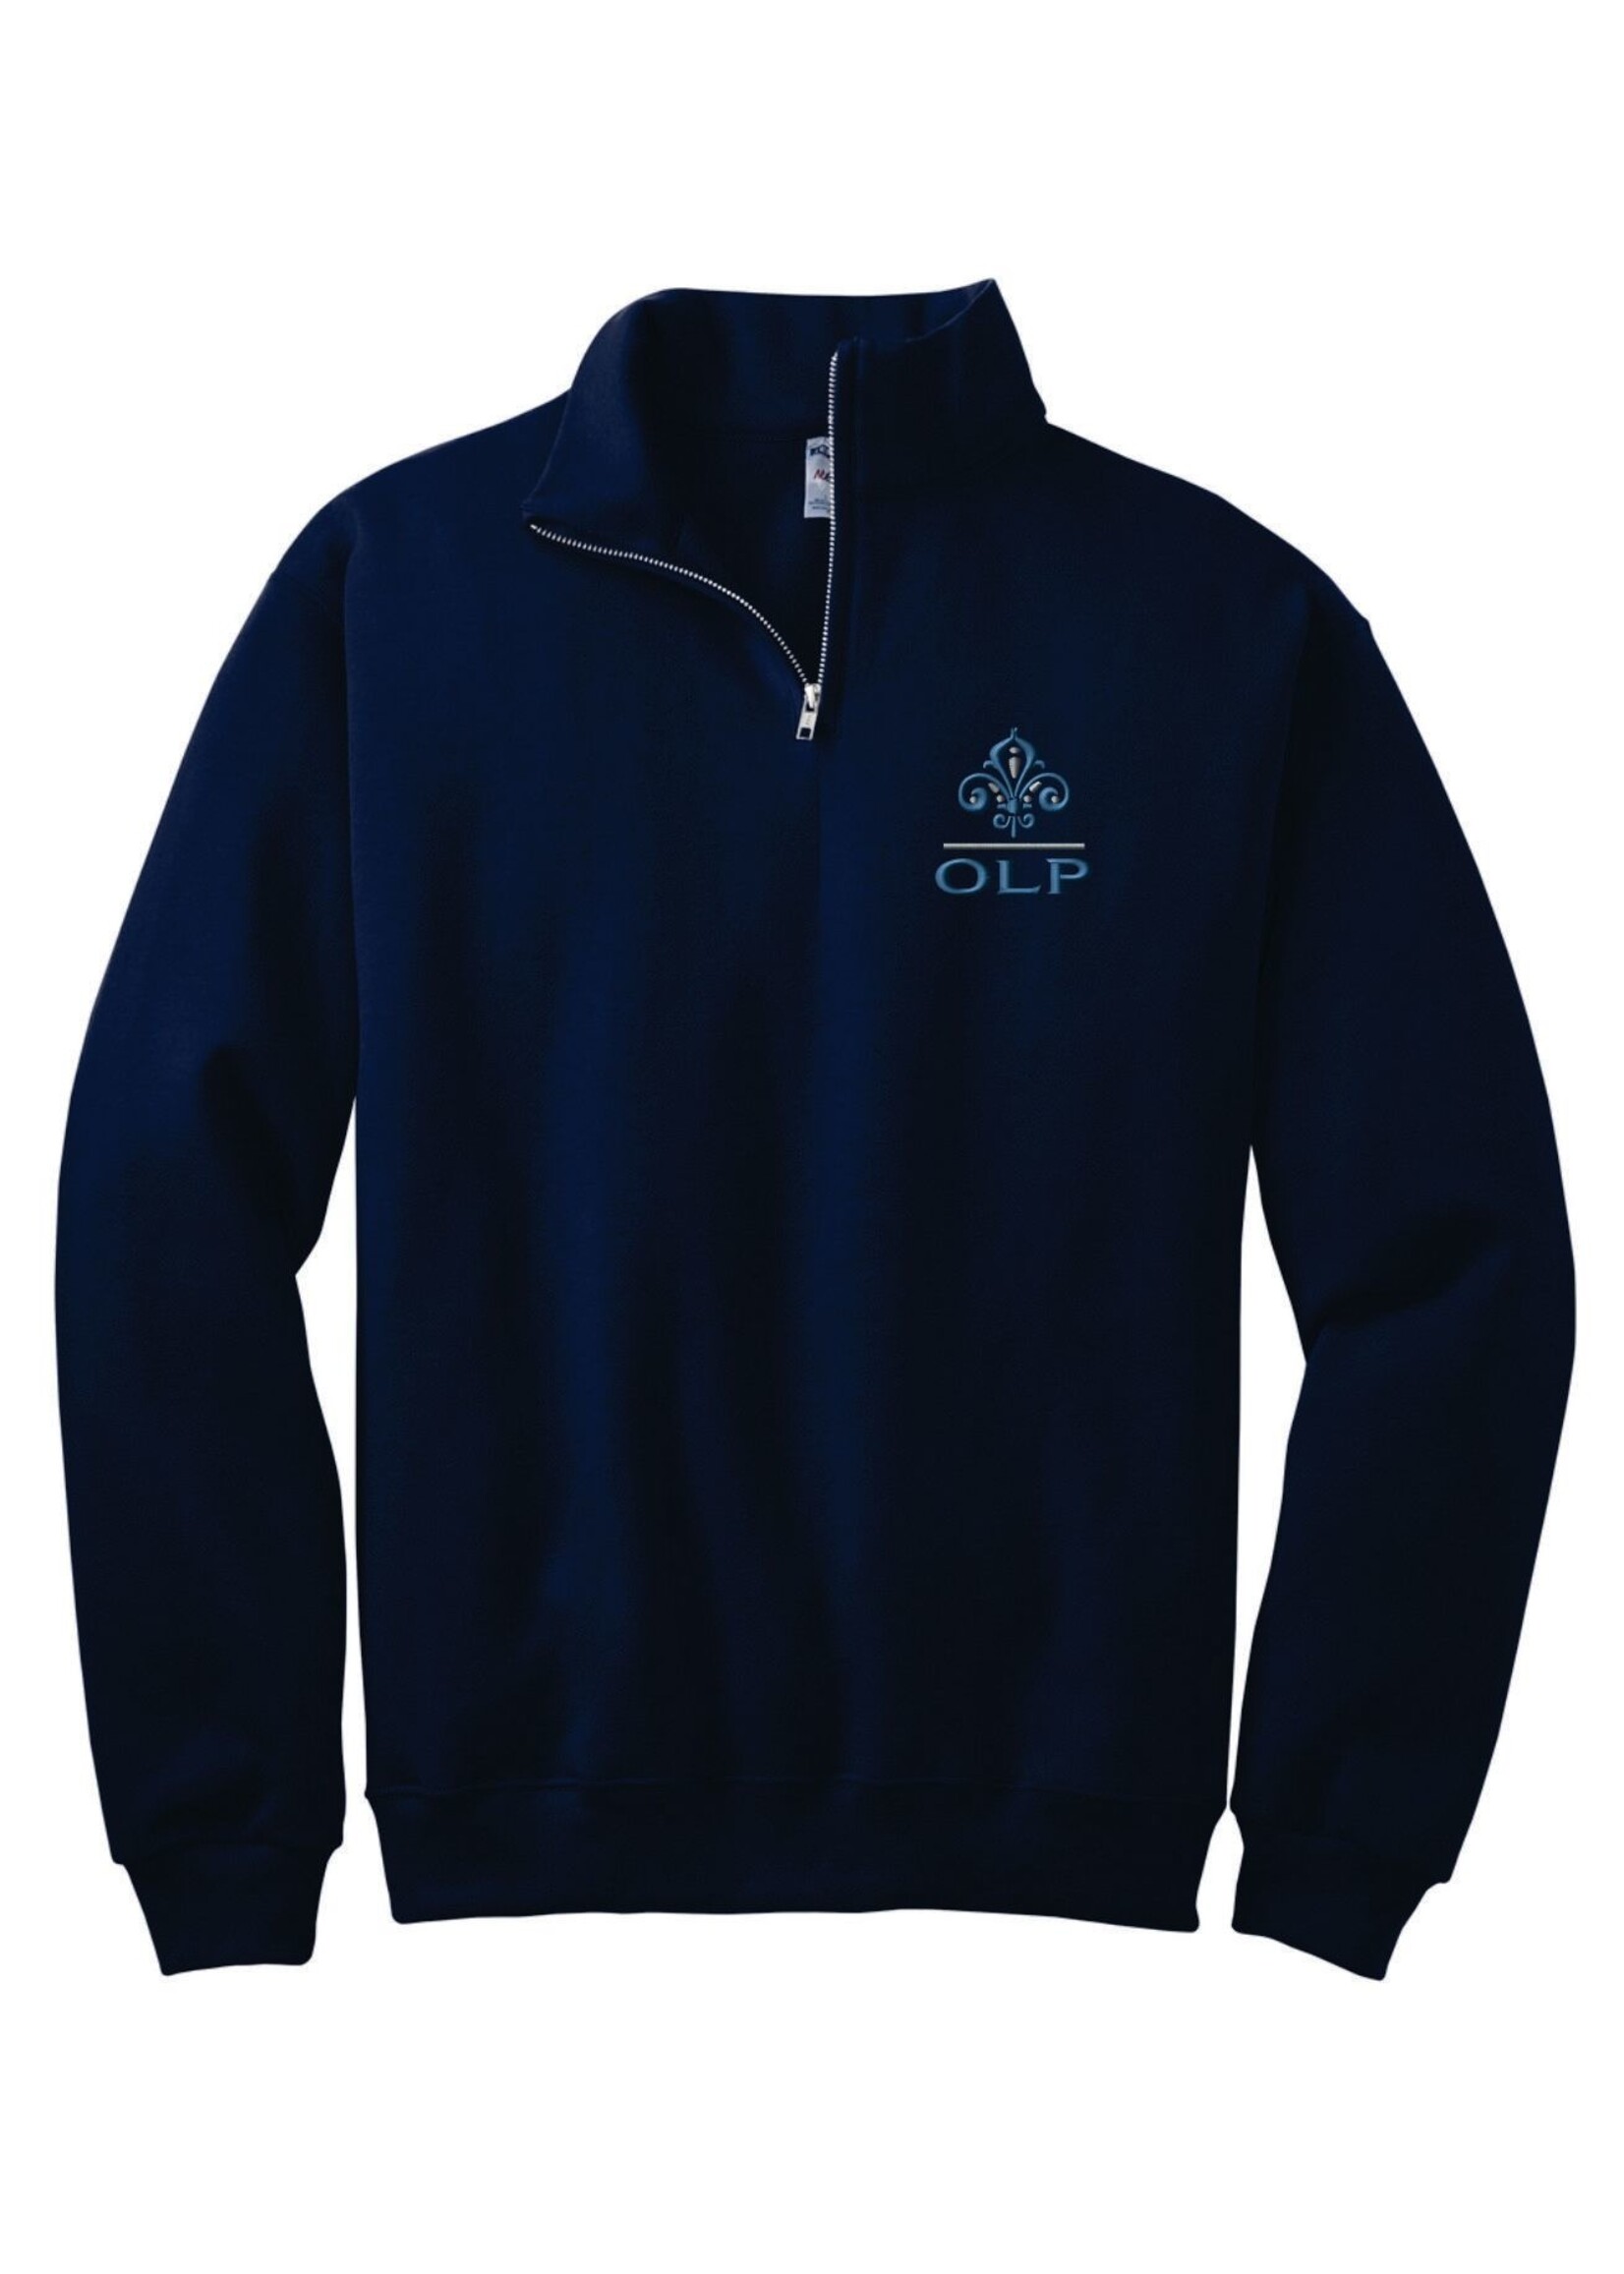 OLP 1/4-Zip Cadet Collar Navy Sweatshirt